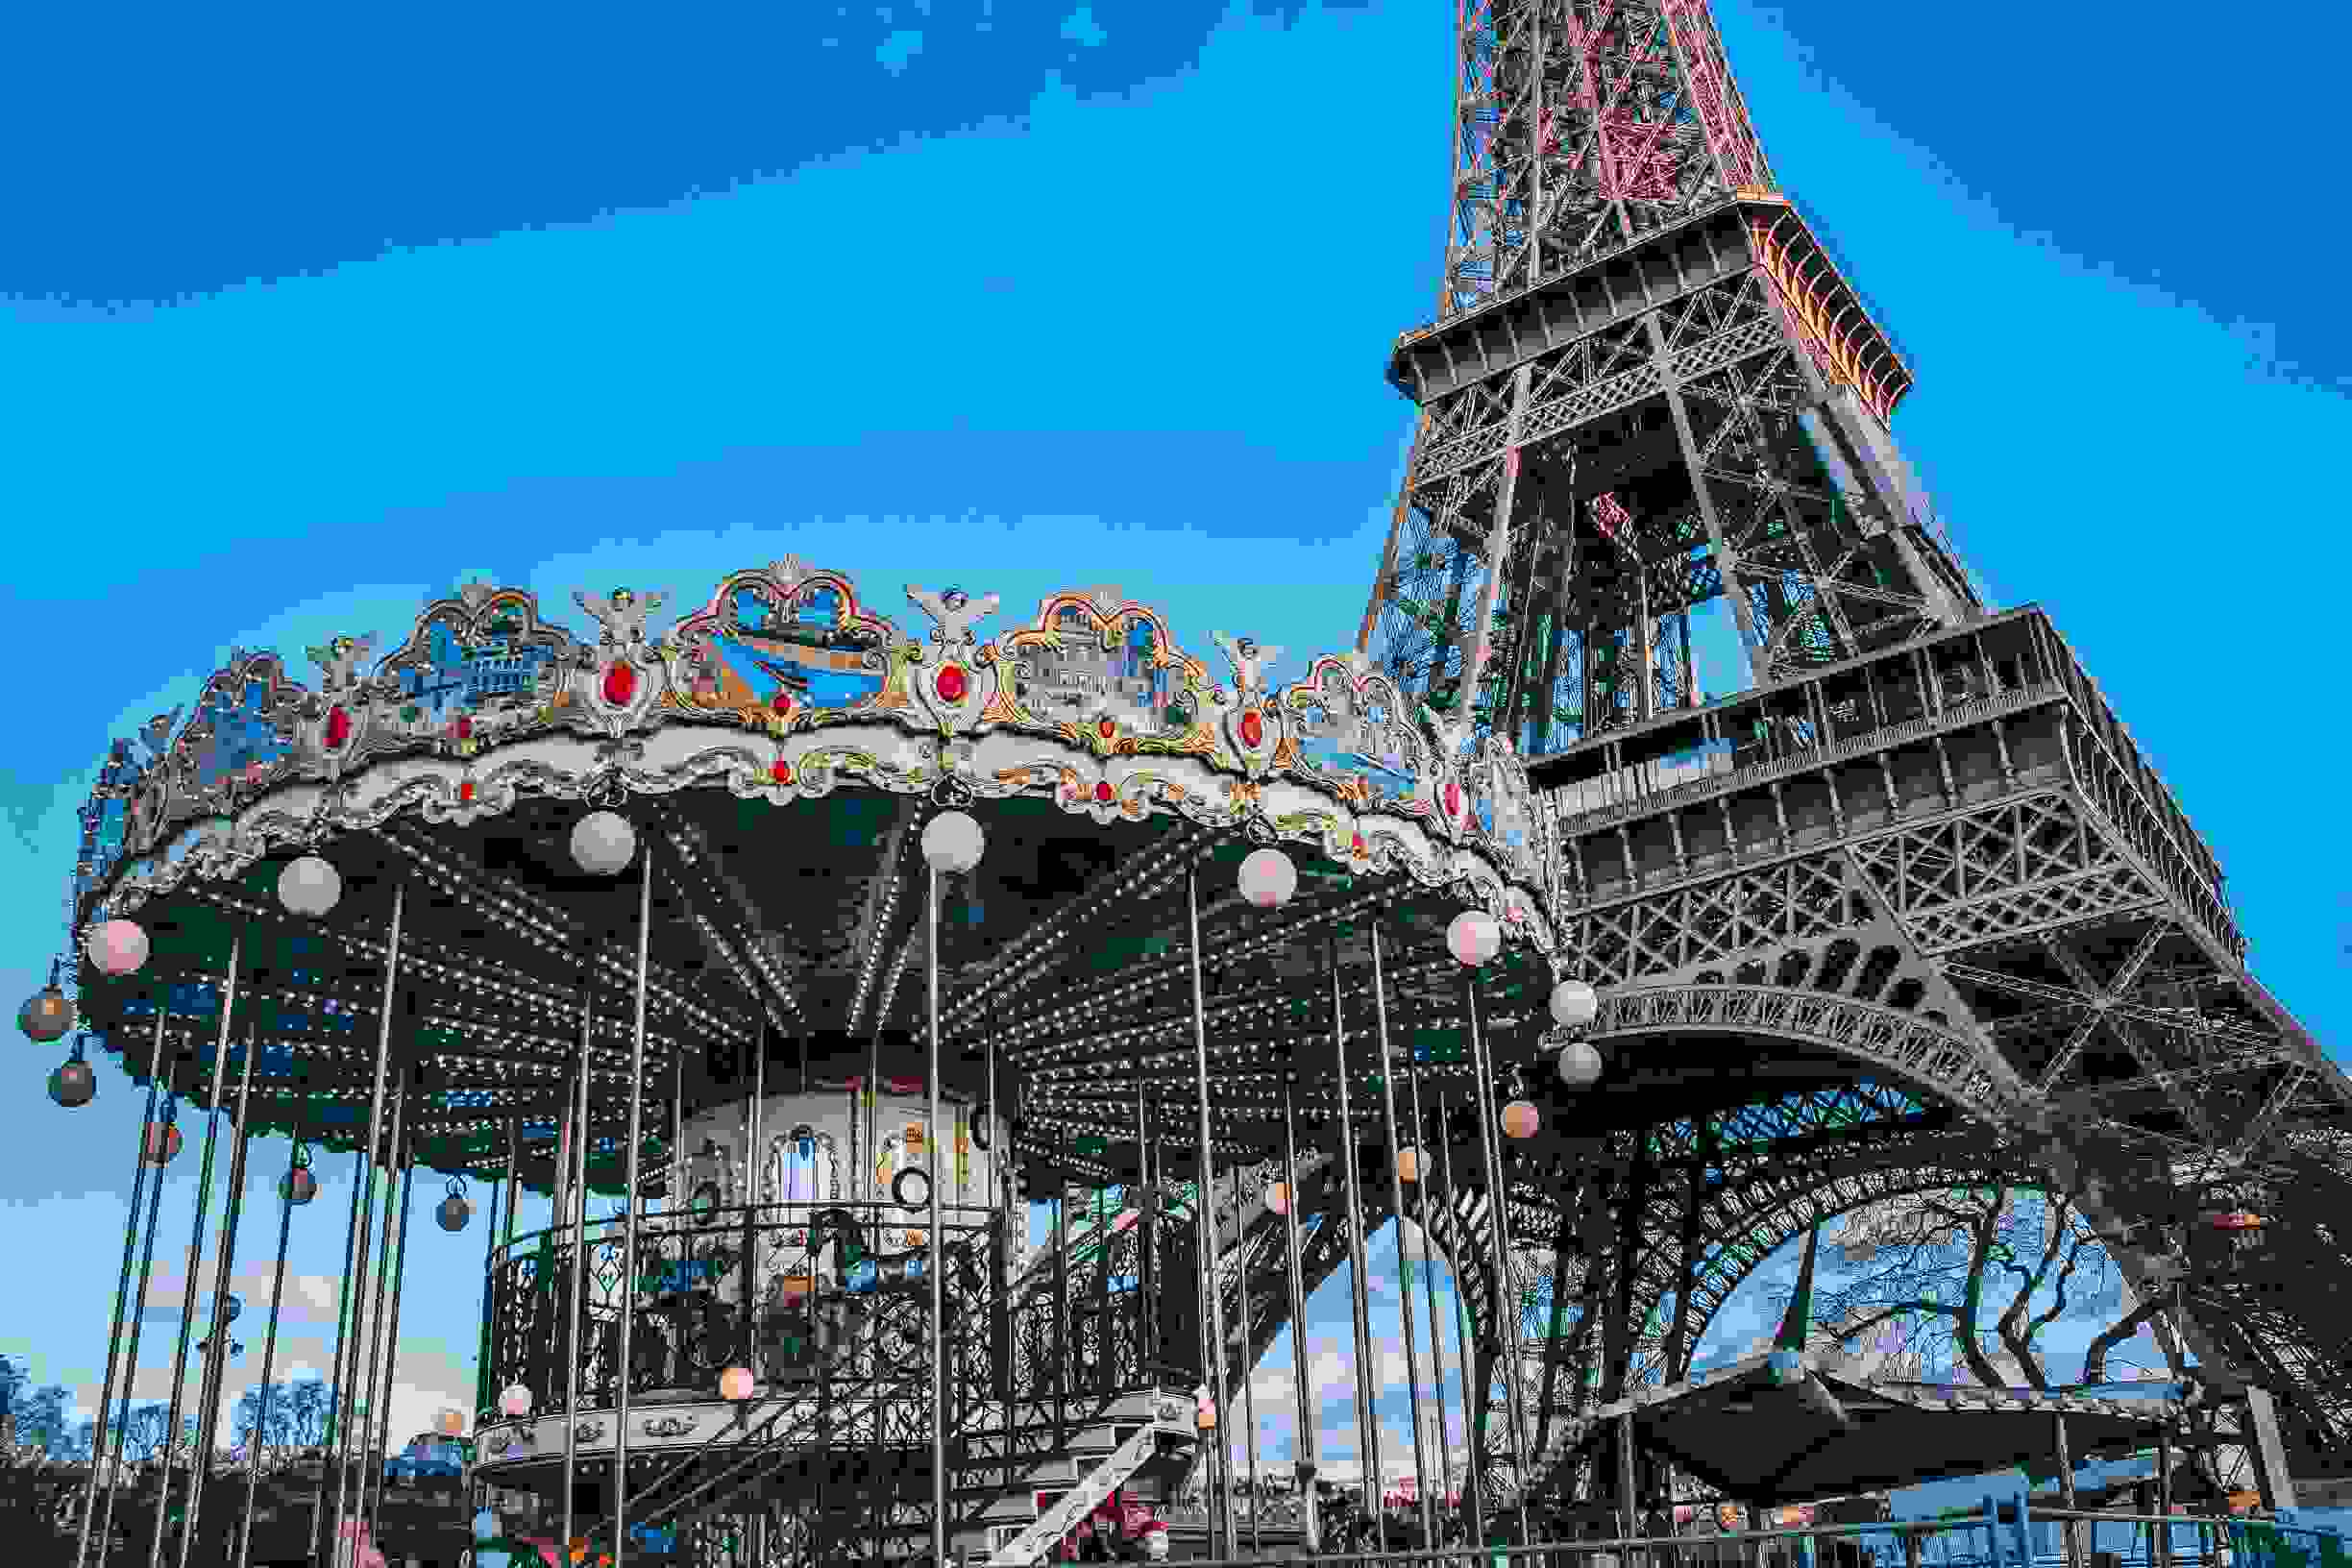 Eis como visitar Paris sem gastar uma fortuna